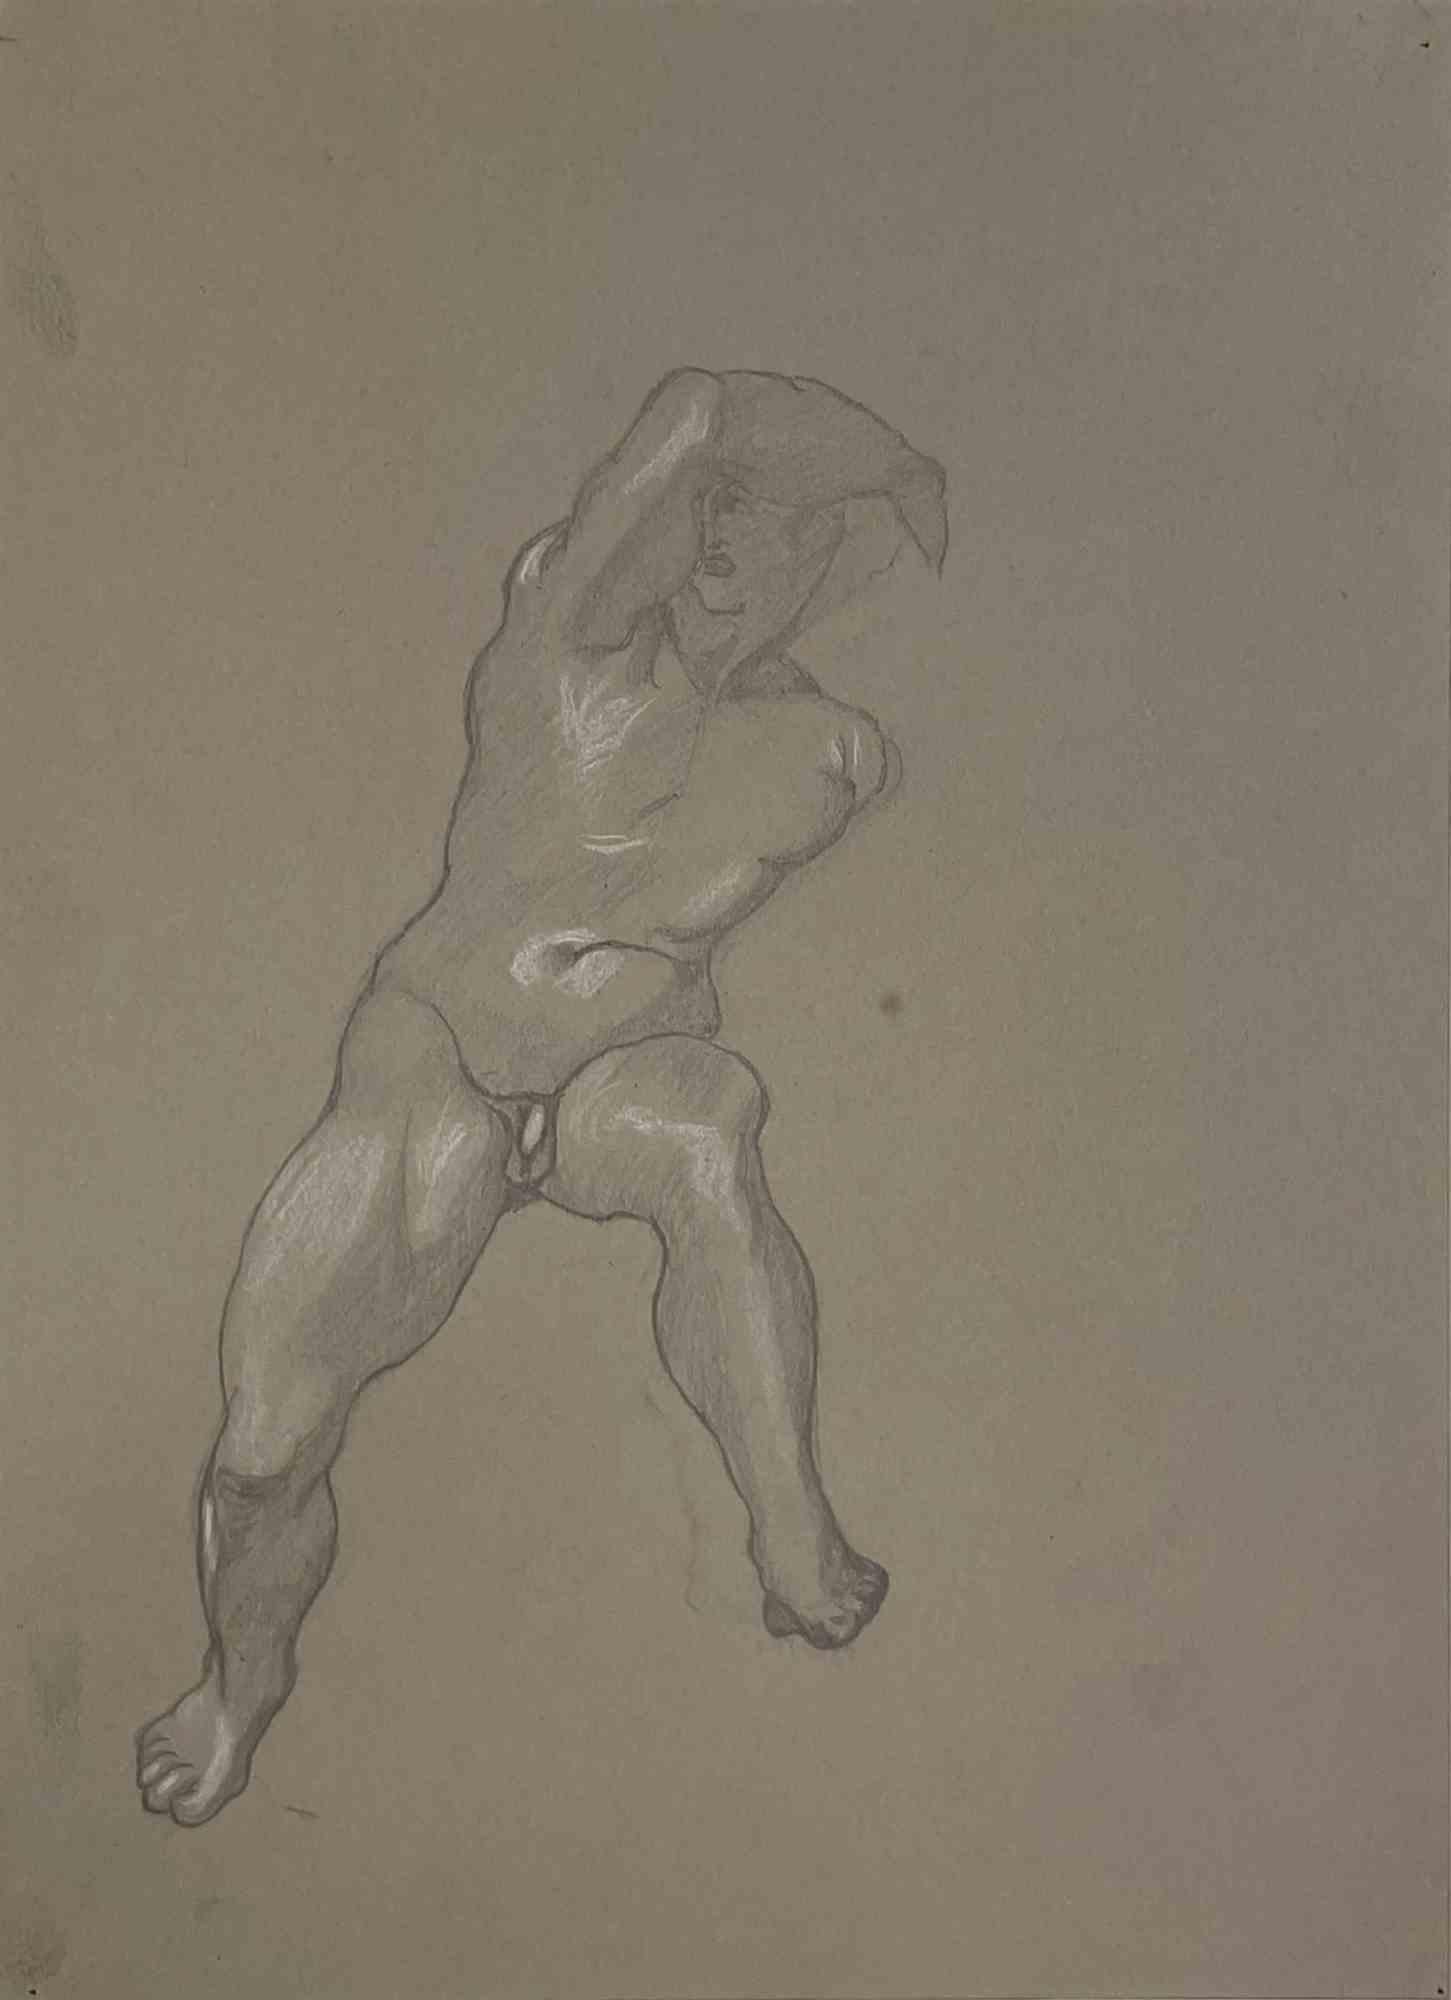 Nackt nach  Michelangelo ist ein Kunstwerk von Luigi Russolo aus den Jahren 1933/34.

Gemischte Medien auf Papier.

cm. 33x24,3. 

Gute Bedingungen!

Luigi Carlo Filippo Russolo (Portogruaro, 30. April 1885 - Laveno-Mombello, 4. Februar 1947) war